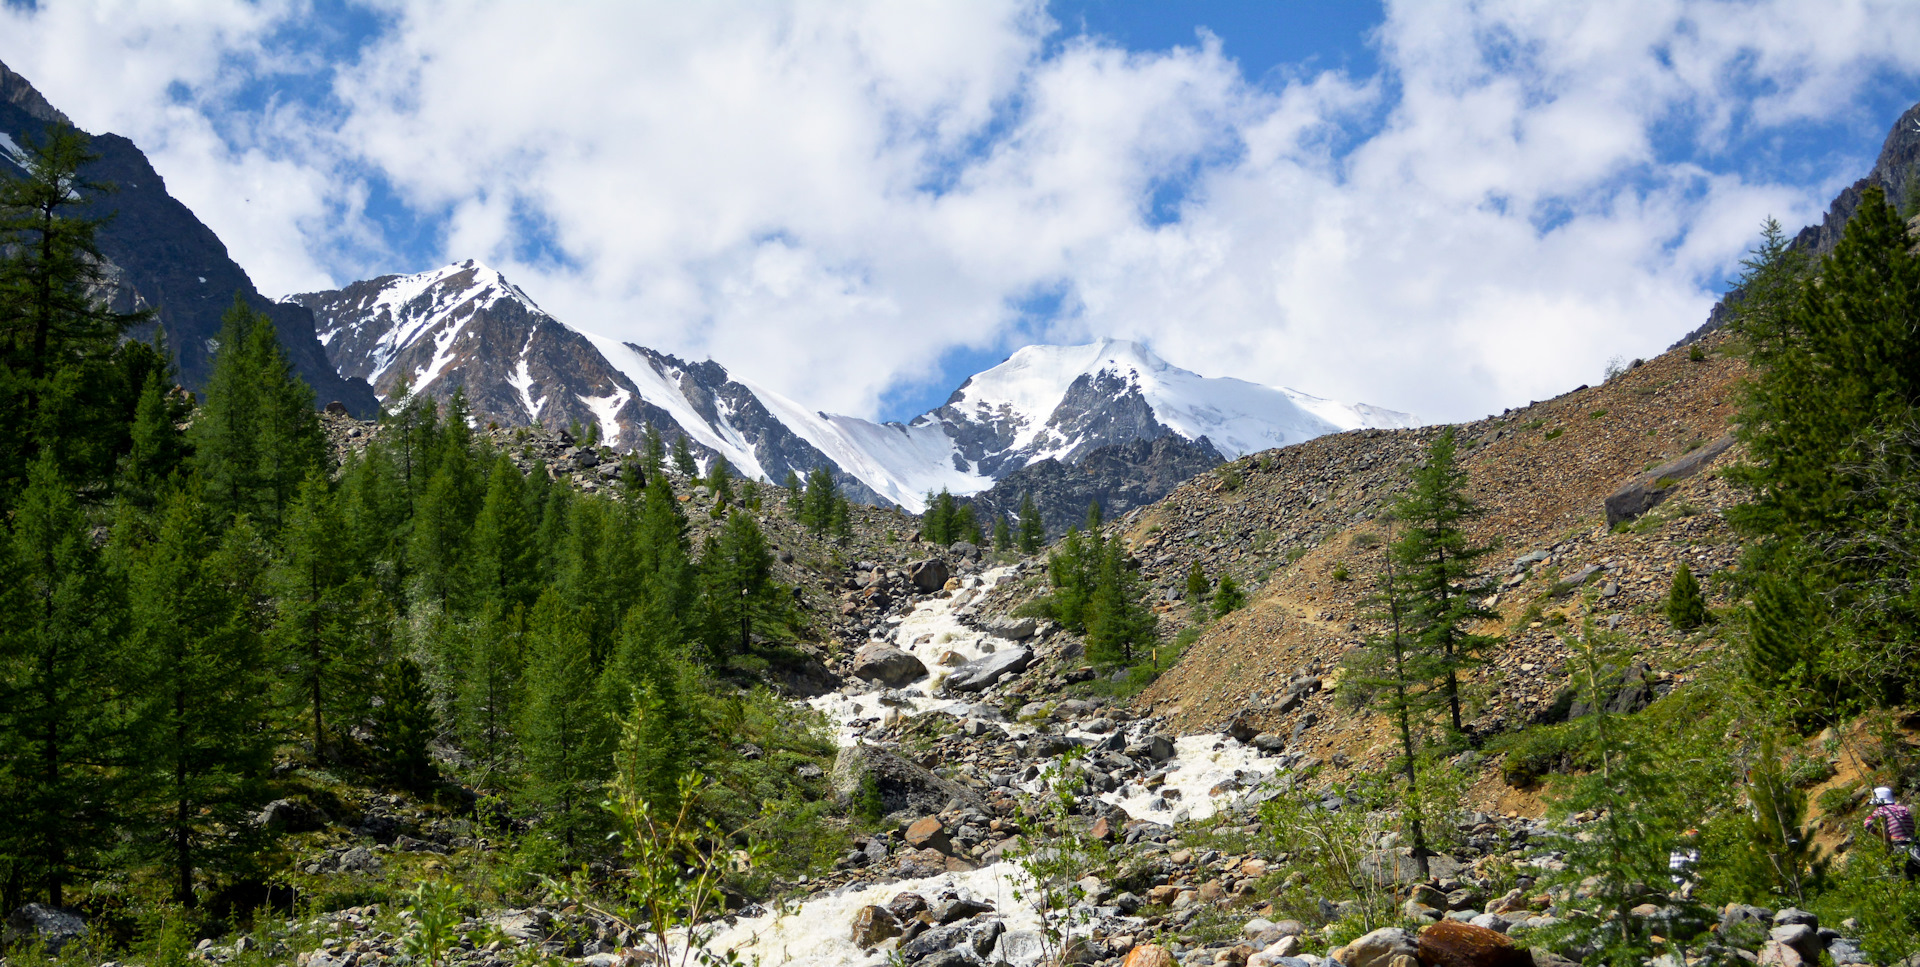 Ледник Актру горный Алтай альплагерь в октябре